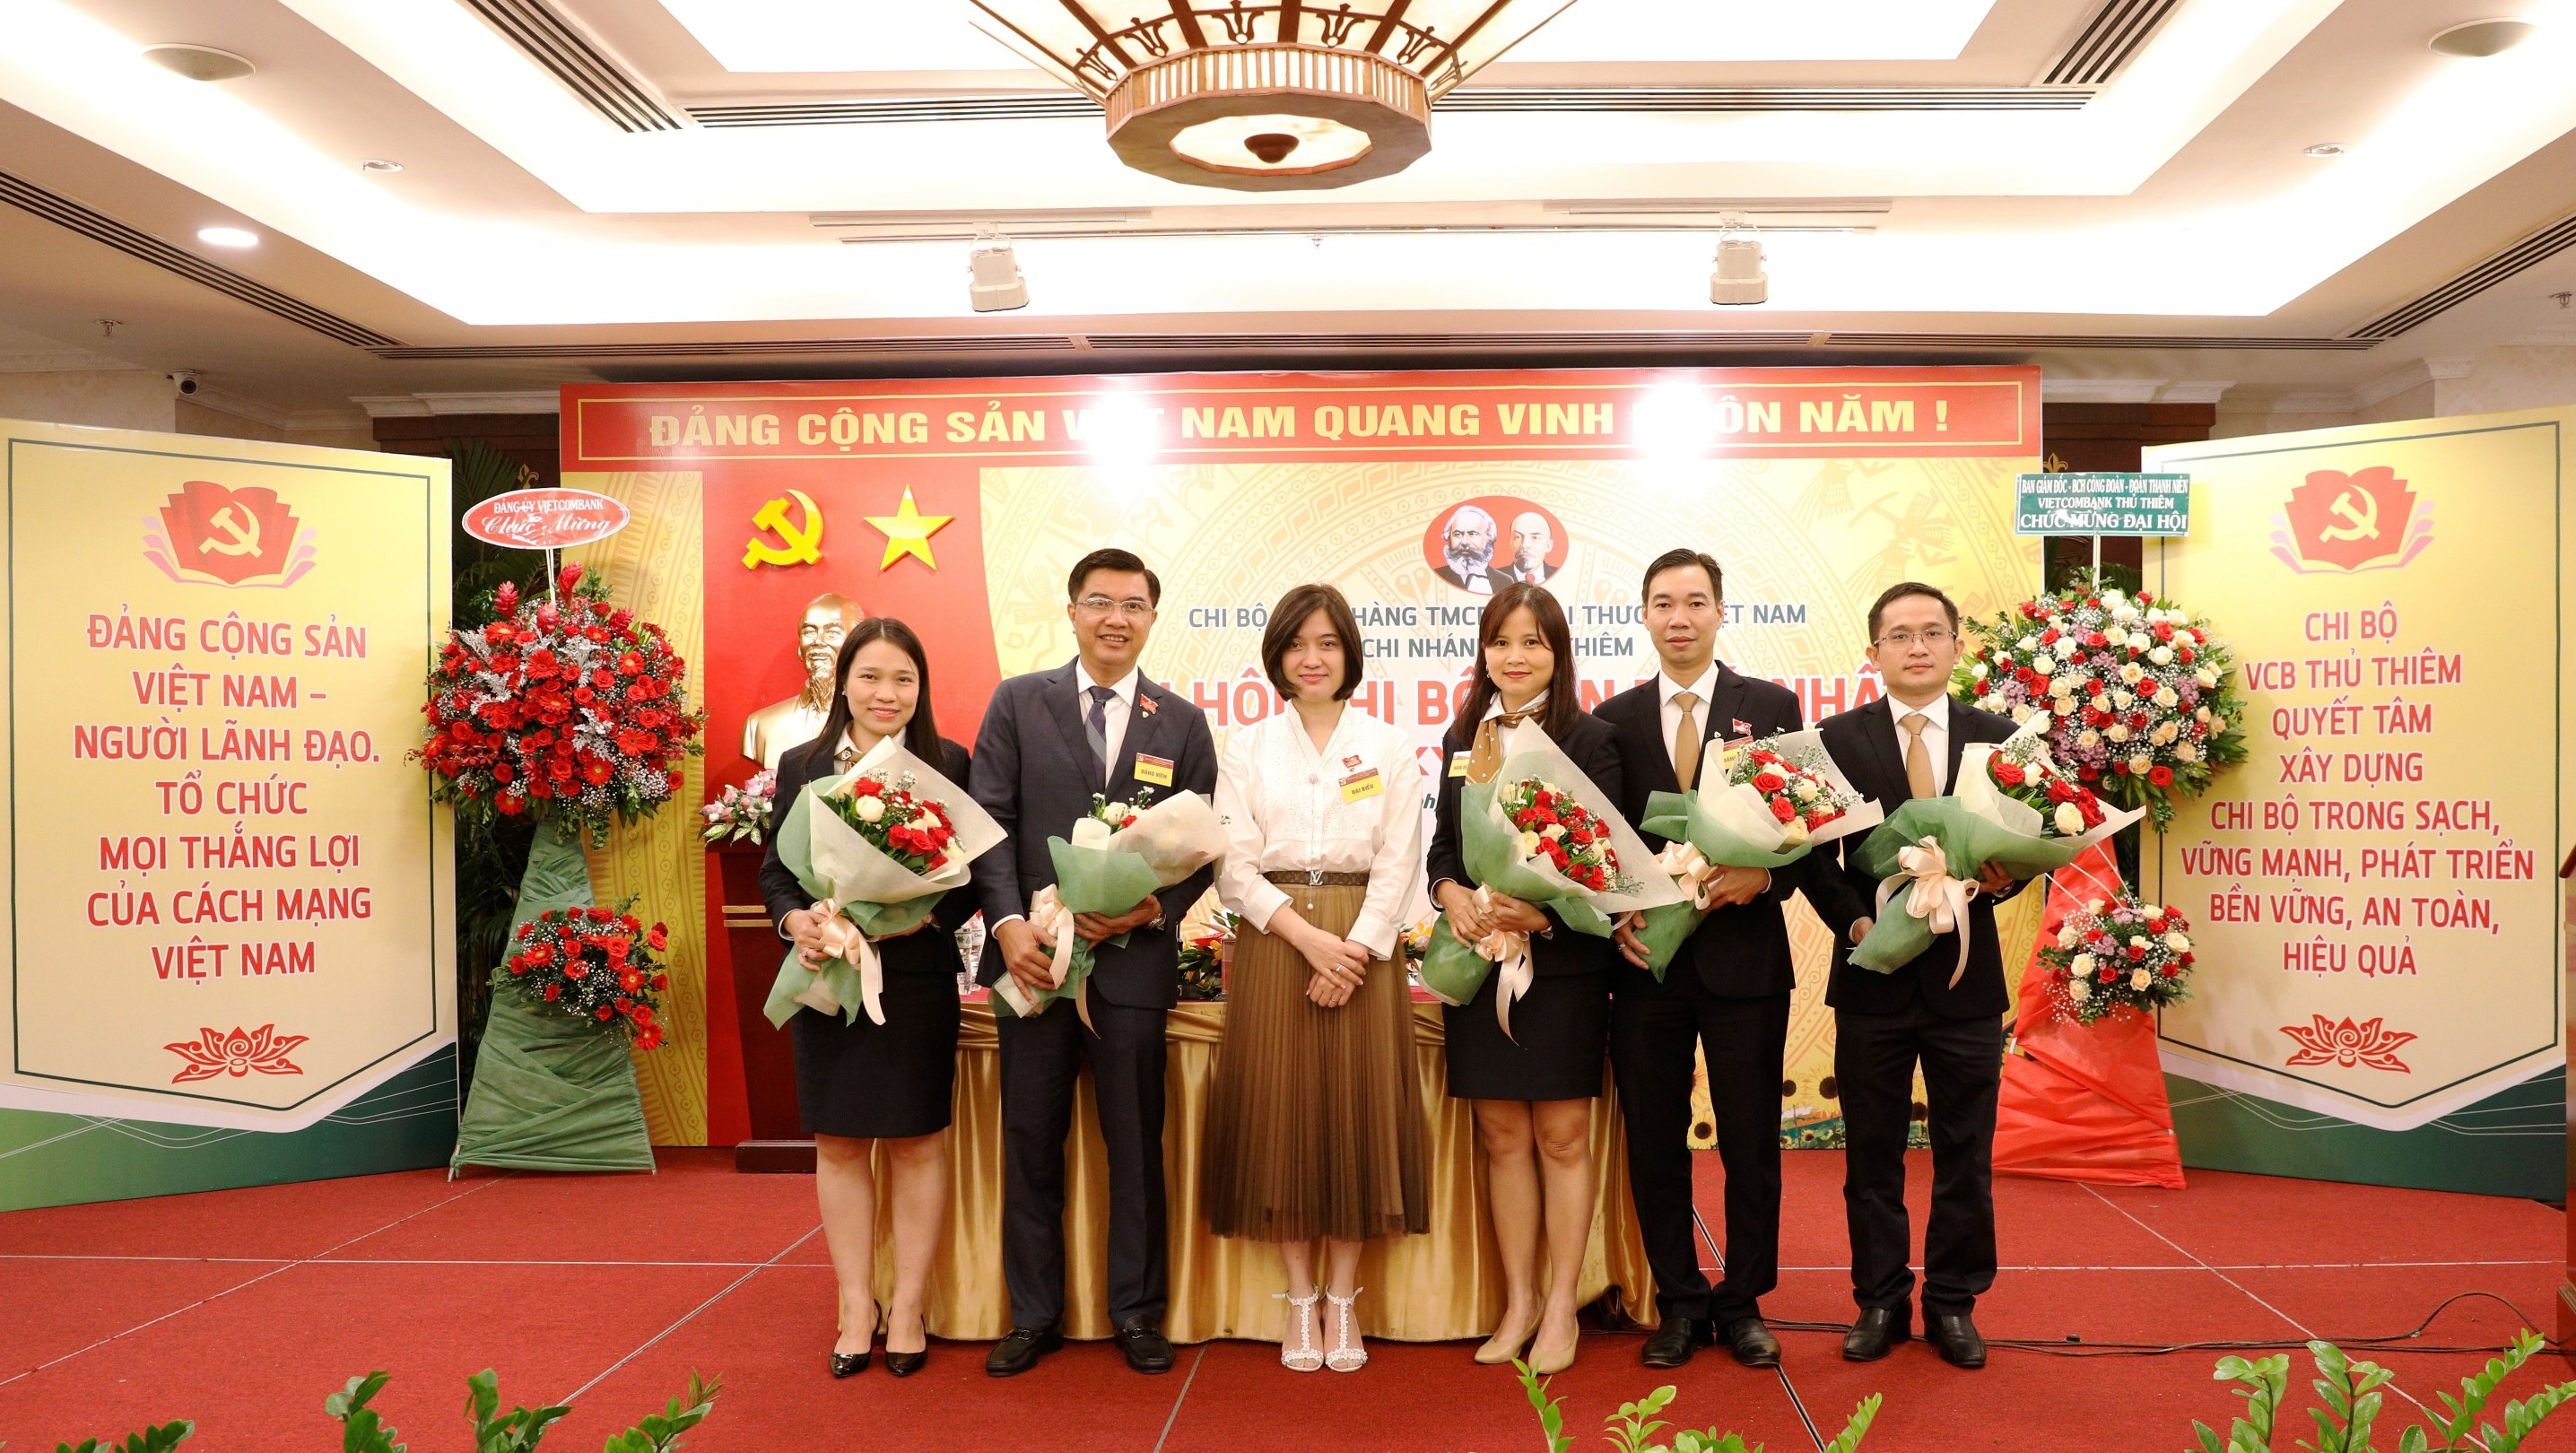 Đại hội chi bộ Vietcombank Thủ Thiêm nhiệm kỳ 2020-2025 thành công tốt đẹp